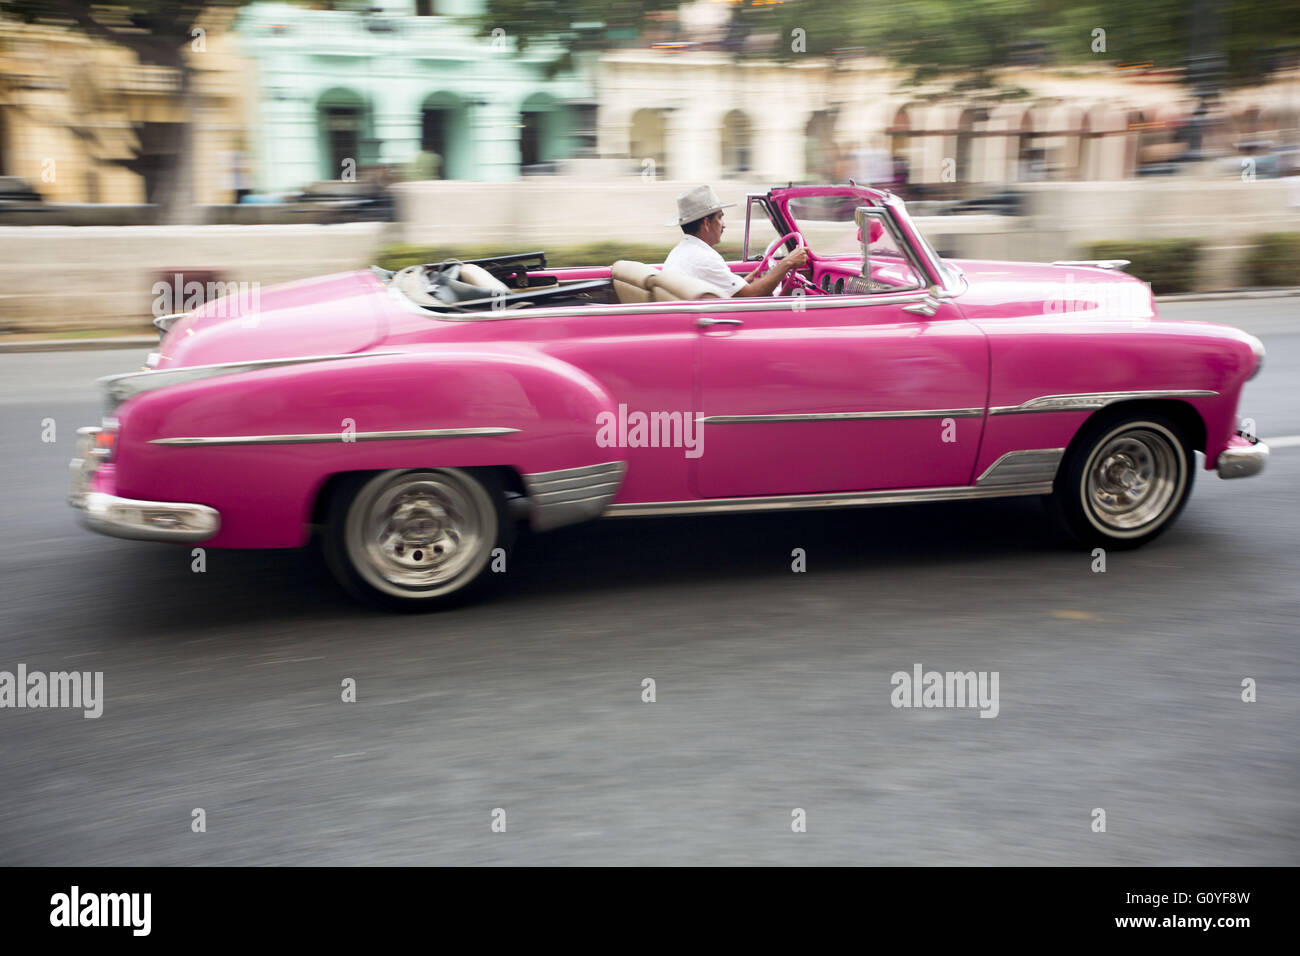 3 mai 2016 - La Havane, Cuba - l'accélération du conducteur à l'écart dans le convertible classique après la suppression des invités le long du Paseo del Prado promenade où Chanel collection Croisière '''' 2016/2017 défilé a eu lieu à La Havane, Cuba. Chanel a embauché plus de 150 ''almendrones'' (le Old US cars) aménagée comme un emblème de l'île socialiste à transporter les clients autour de la ville. Les voitures anciennes de Cuba est apparue comme une impression sur plusieurs morceaux. Maison de couture française Chanel a mis en scène son spectacle dans la capitale cubaine La Havane - la première internationale fashion show depuis la révolution communiste de 1959, laquelle highligh Banque D'Images